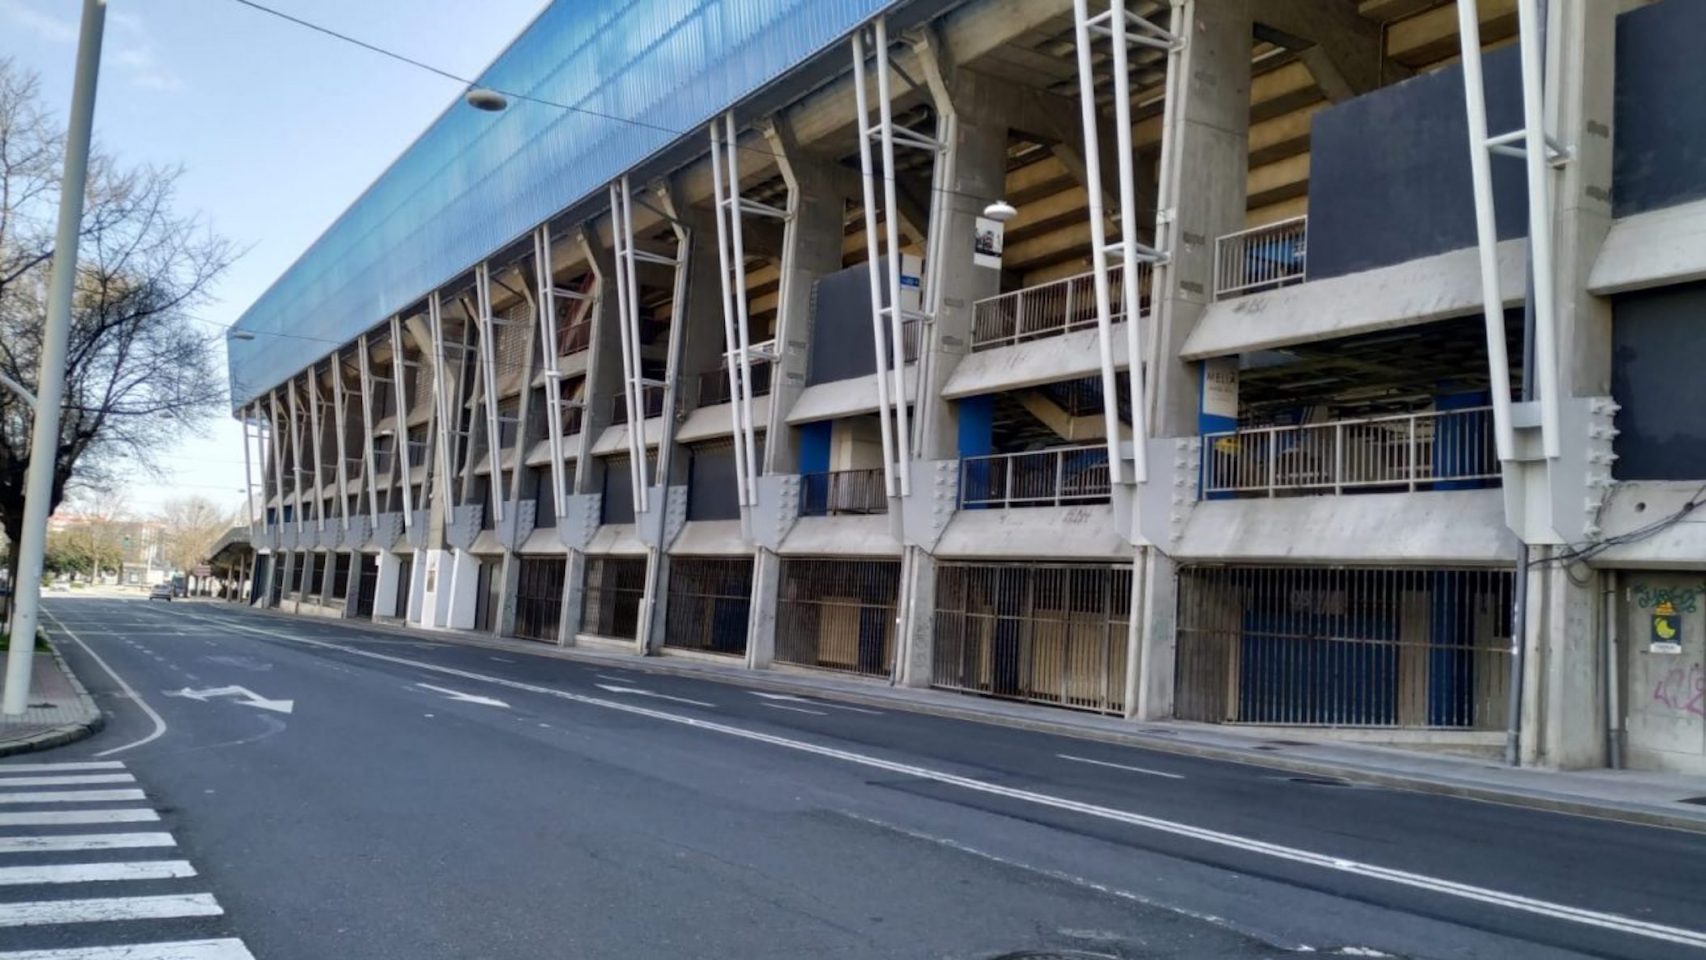 Poco tráfico en la zona del estadio de Riazor de A Coruña